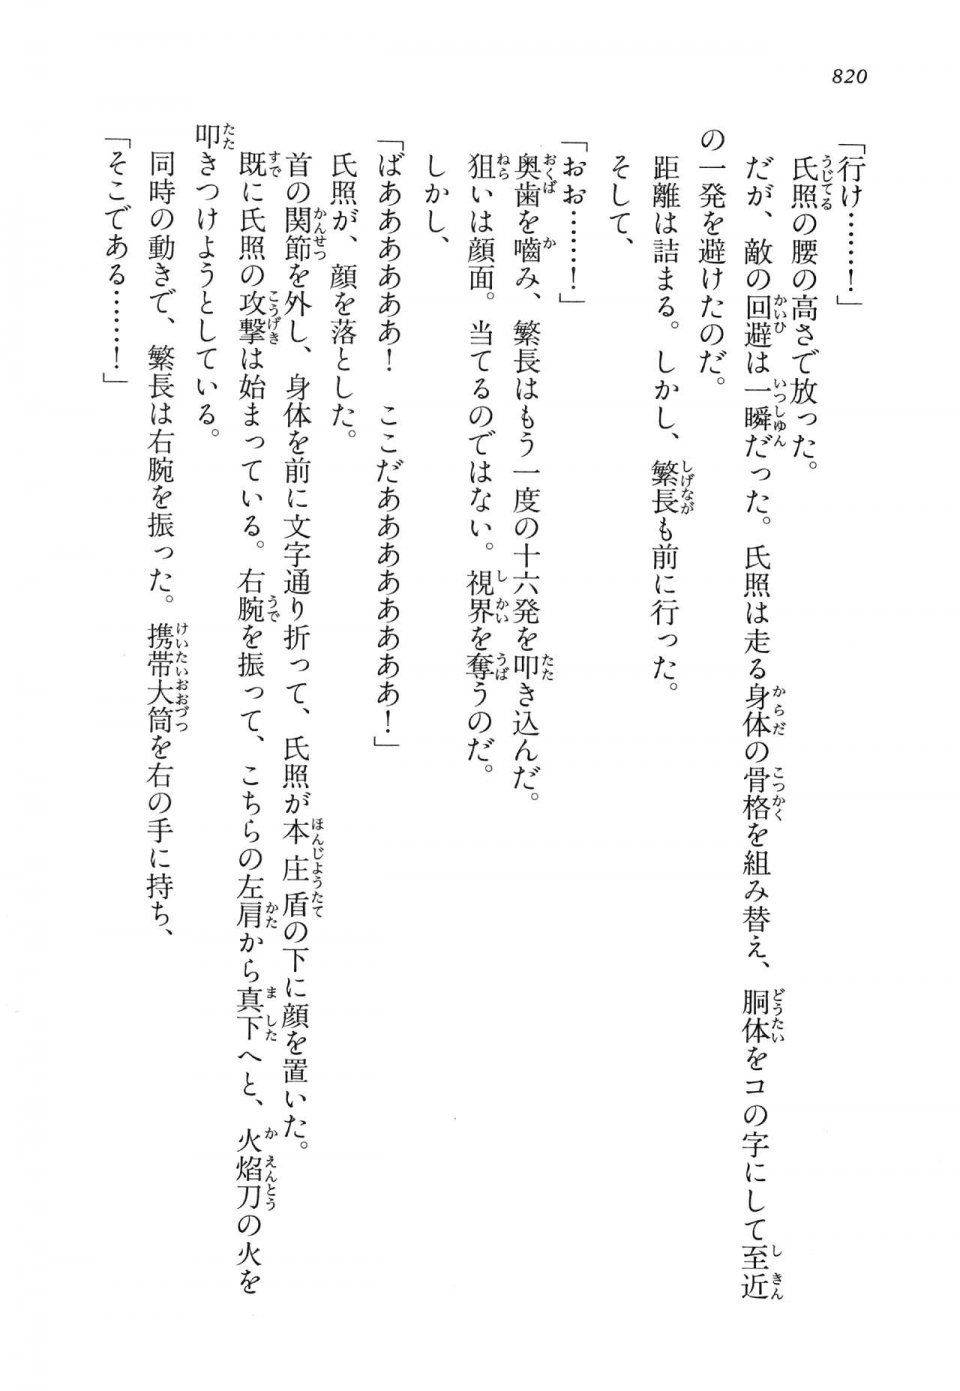 Kyoukai Senjou no Horizon LN Vol 14(6B) - Photo #820